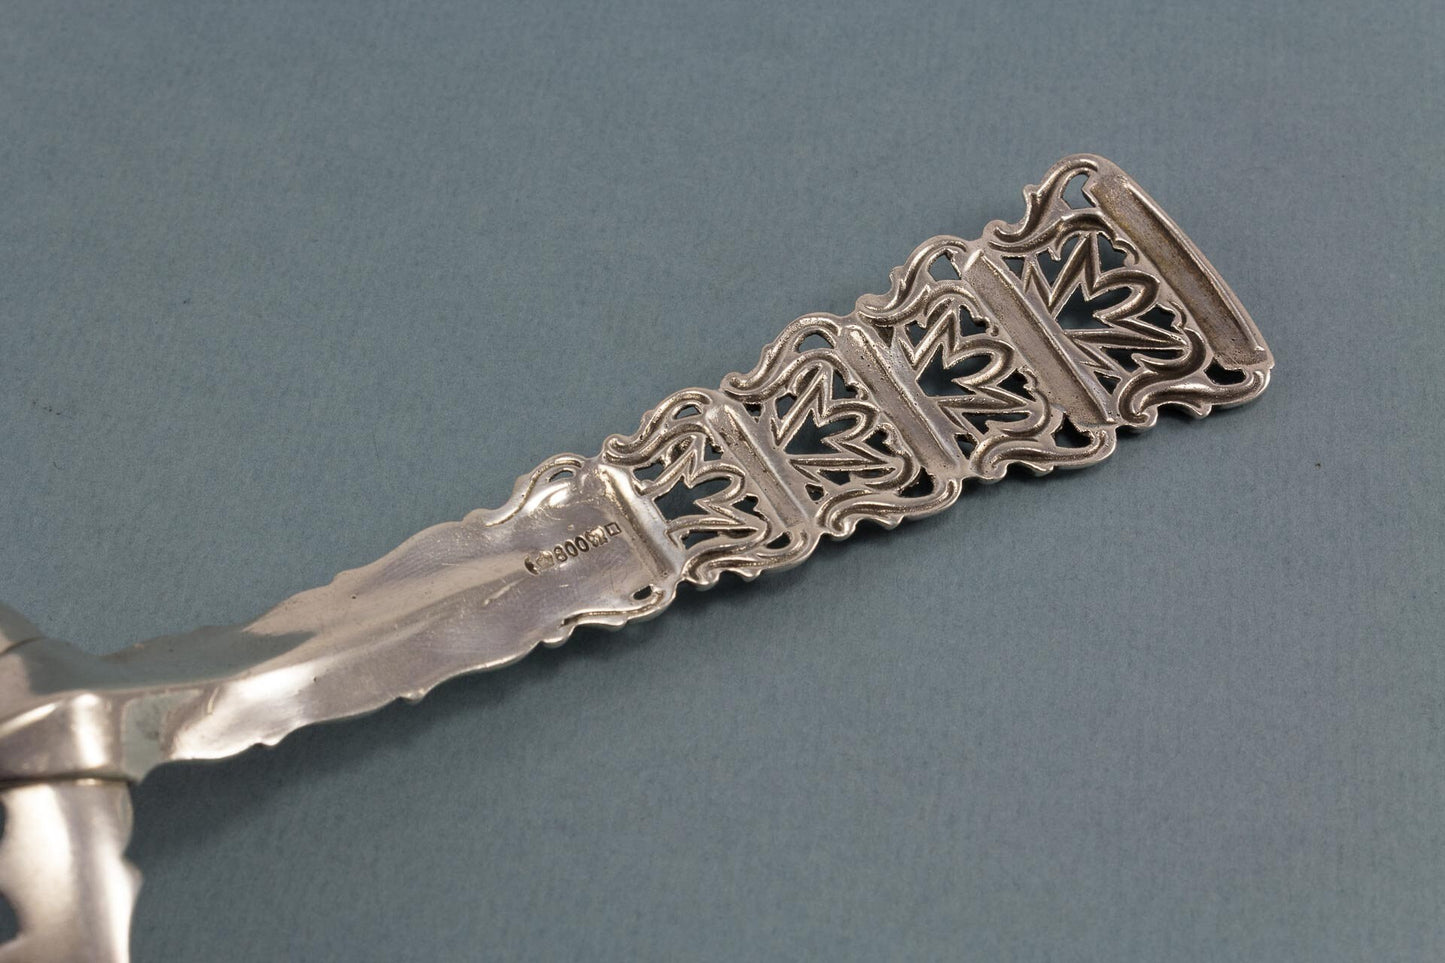 Seltener Tortenheber aus 800er Silber, Bruckmann, Hochzeitsgeschenk